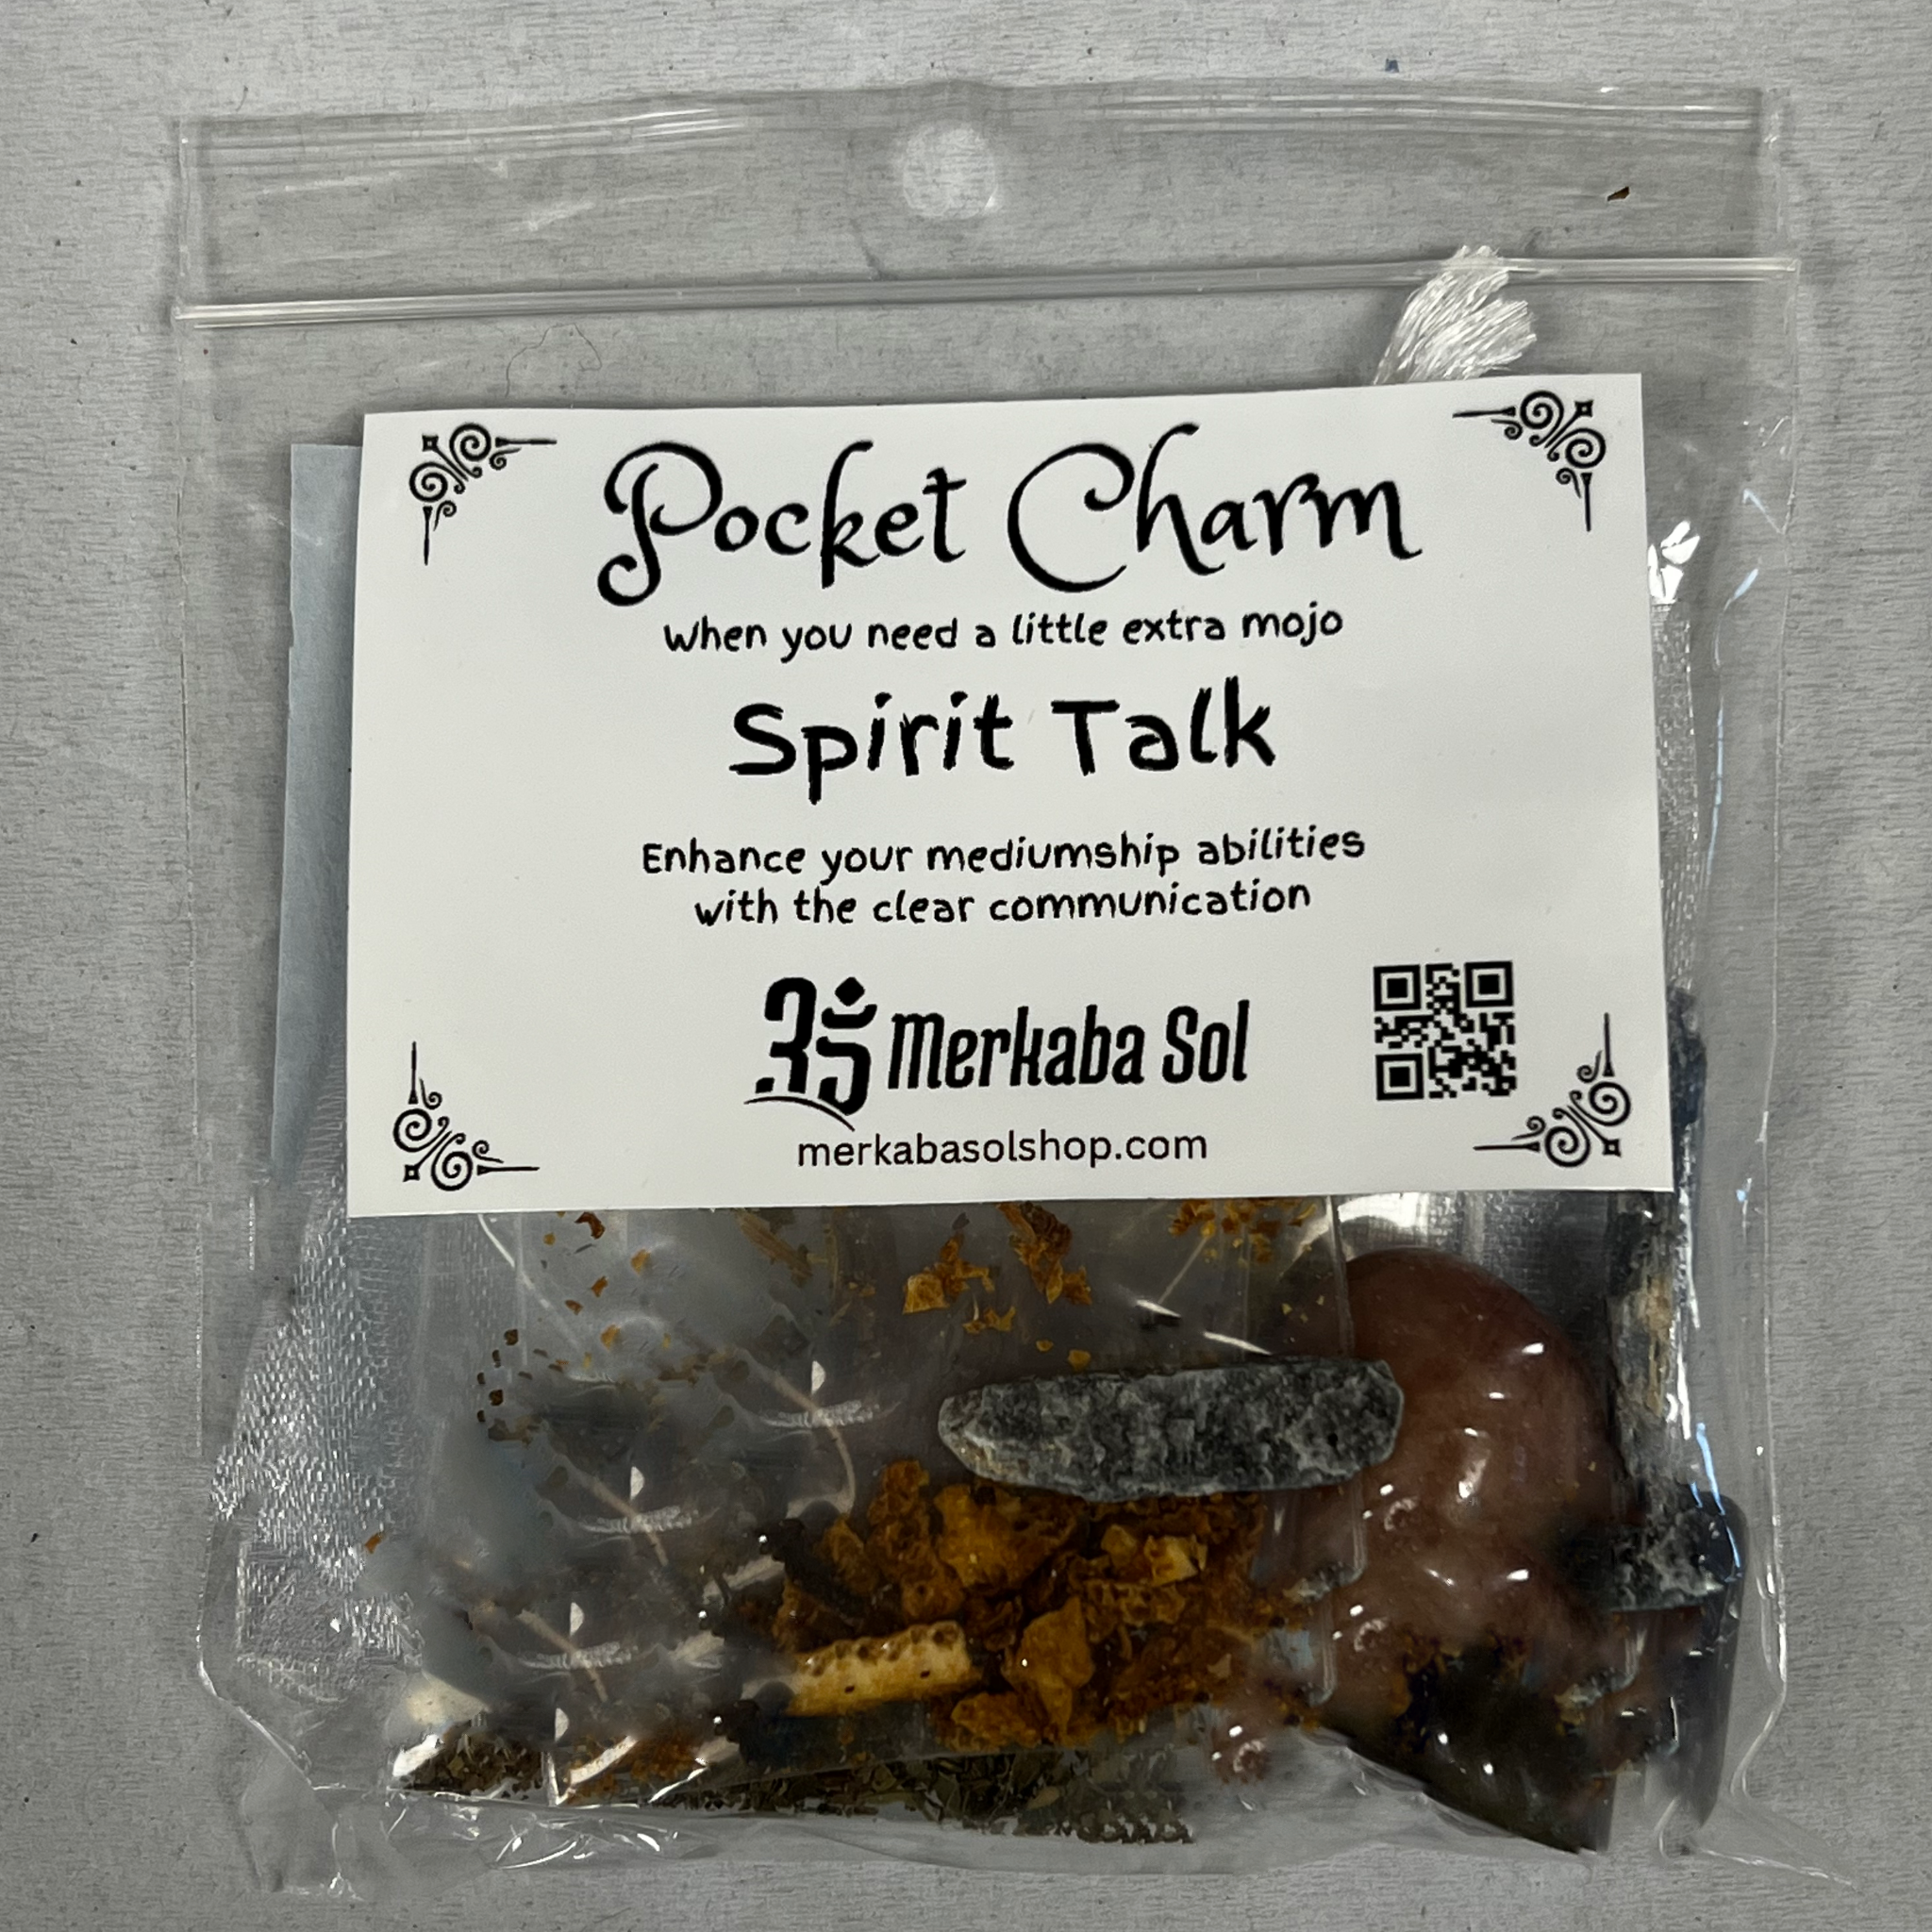 Spirit Talk Pocket Charm Kit